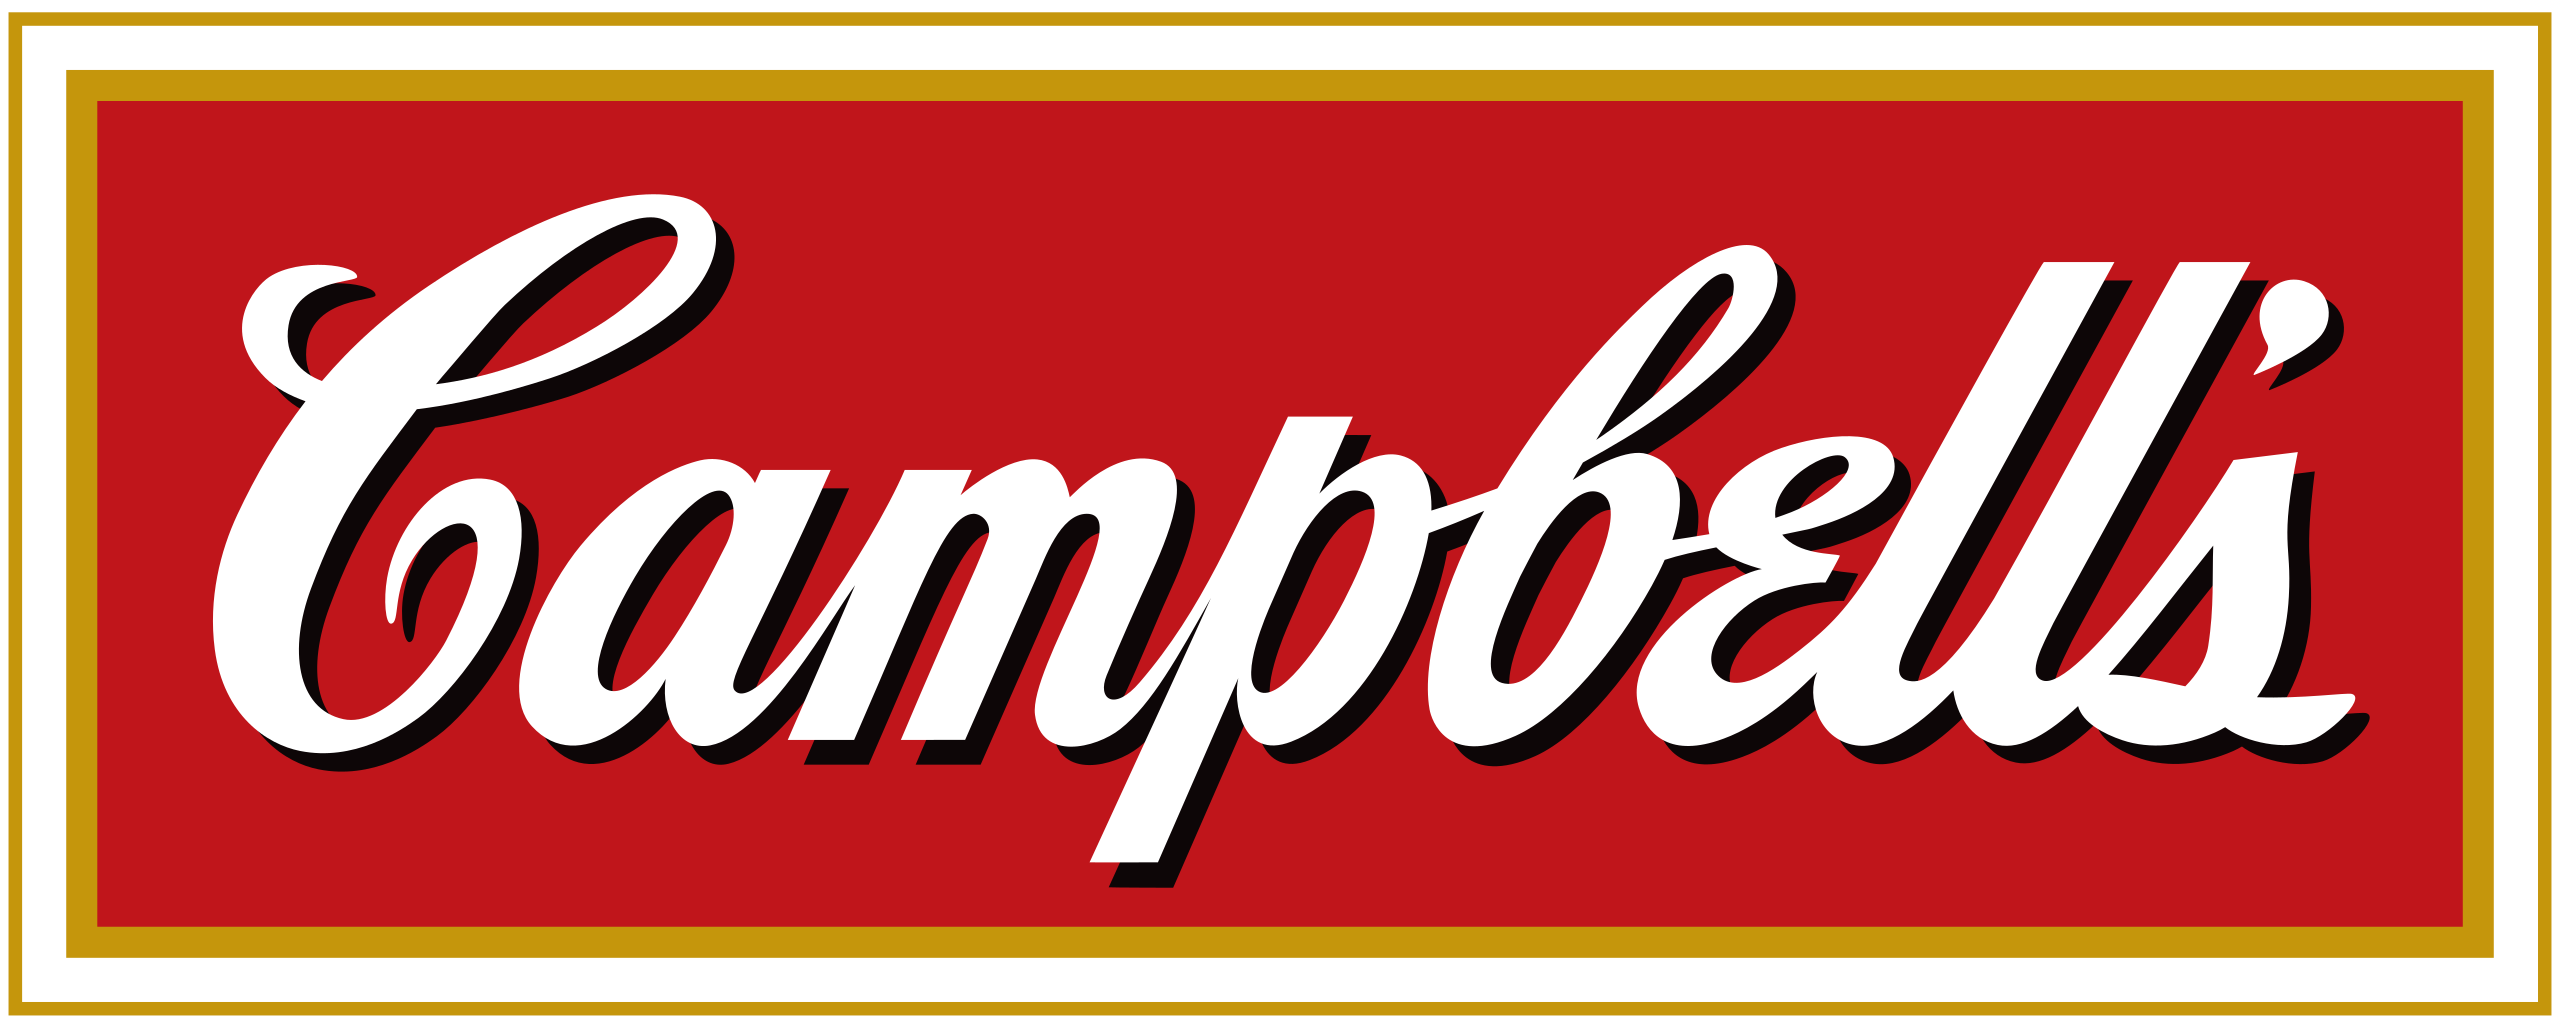 Campbell Soup Company logo.svg